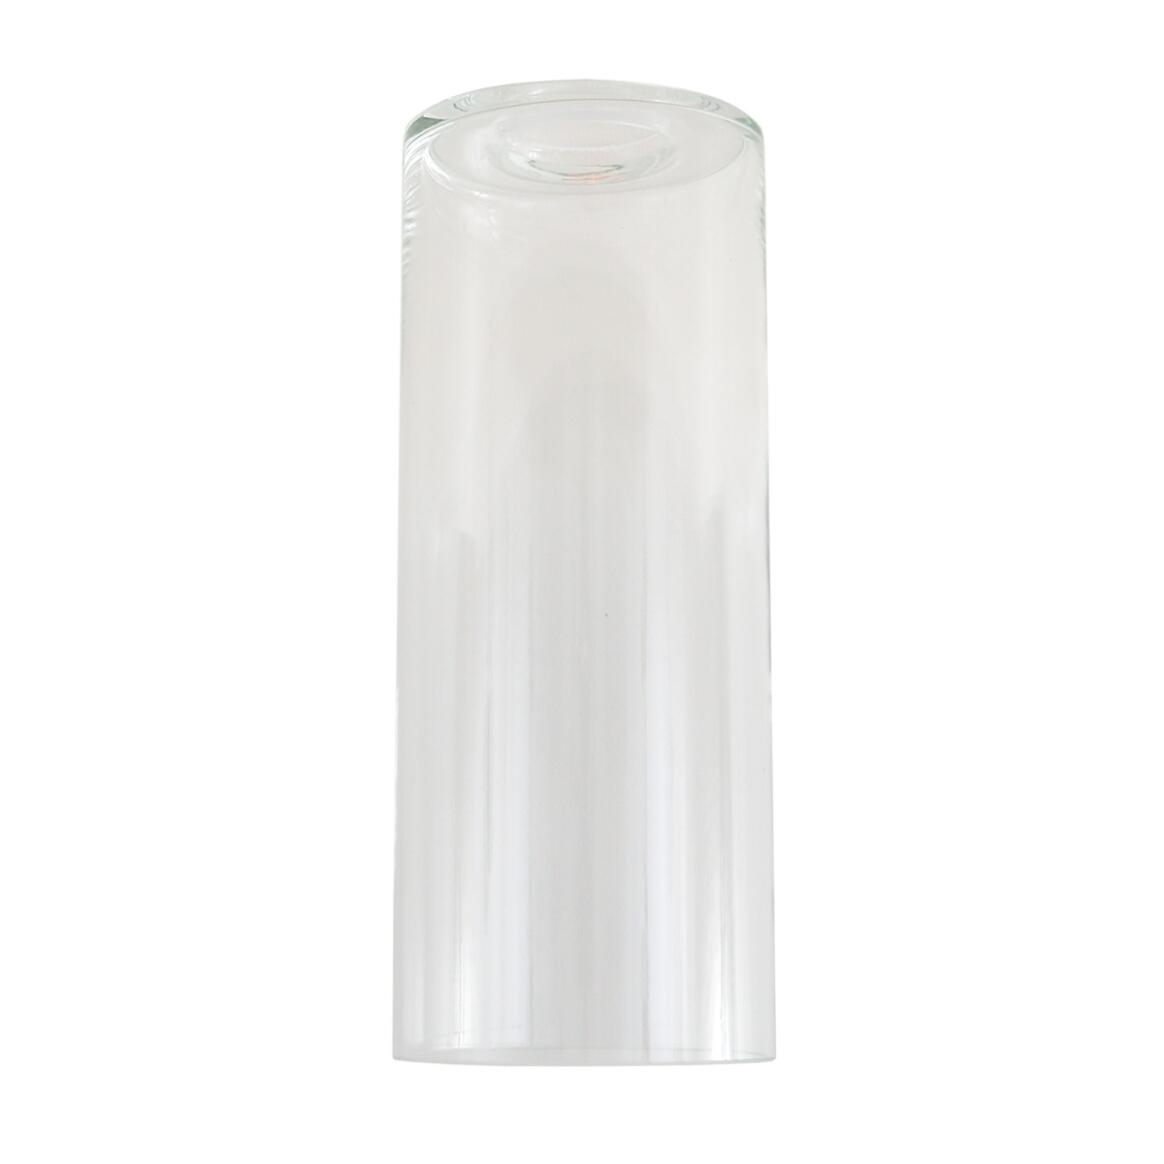 Abat-jour cylindrique en verre transparent main product image